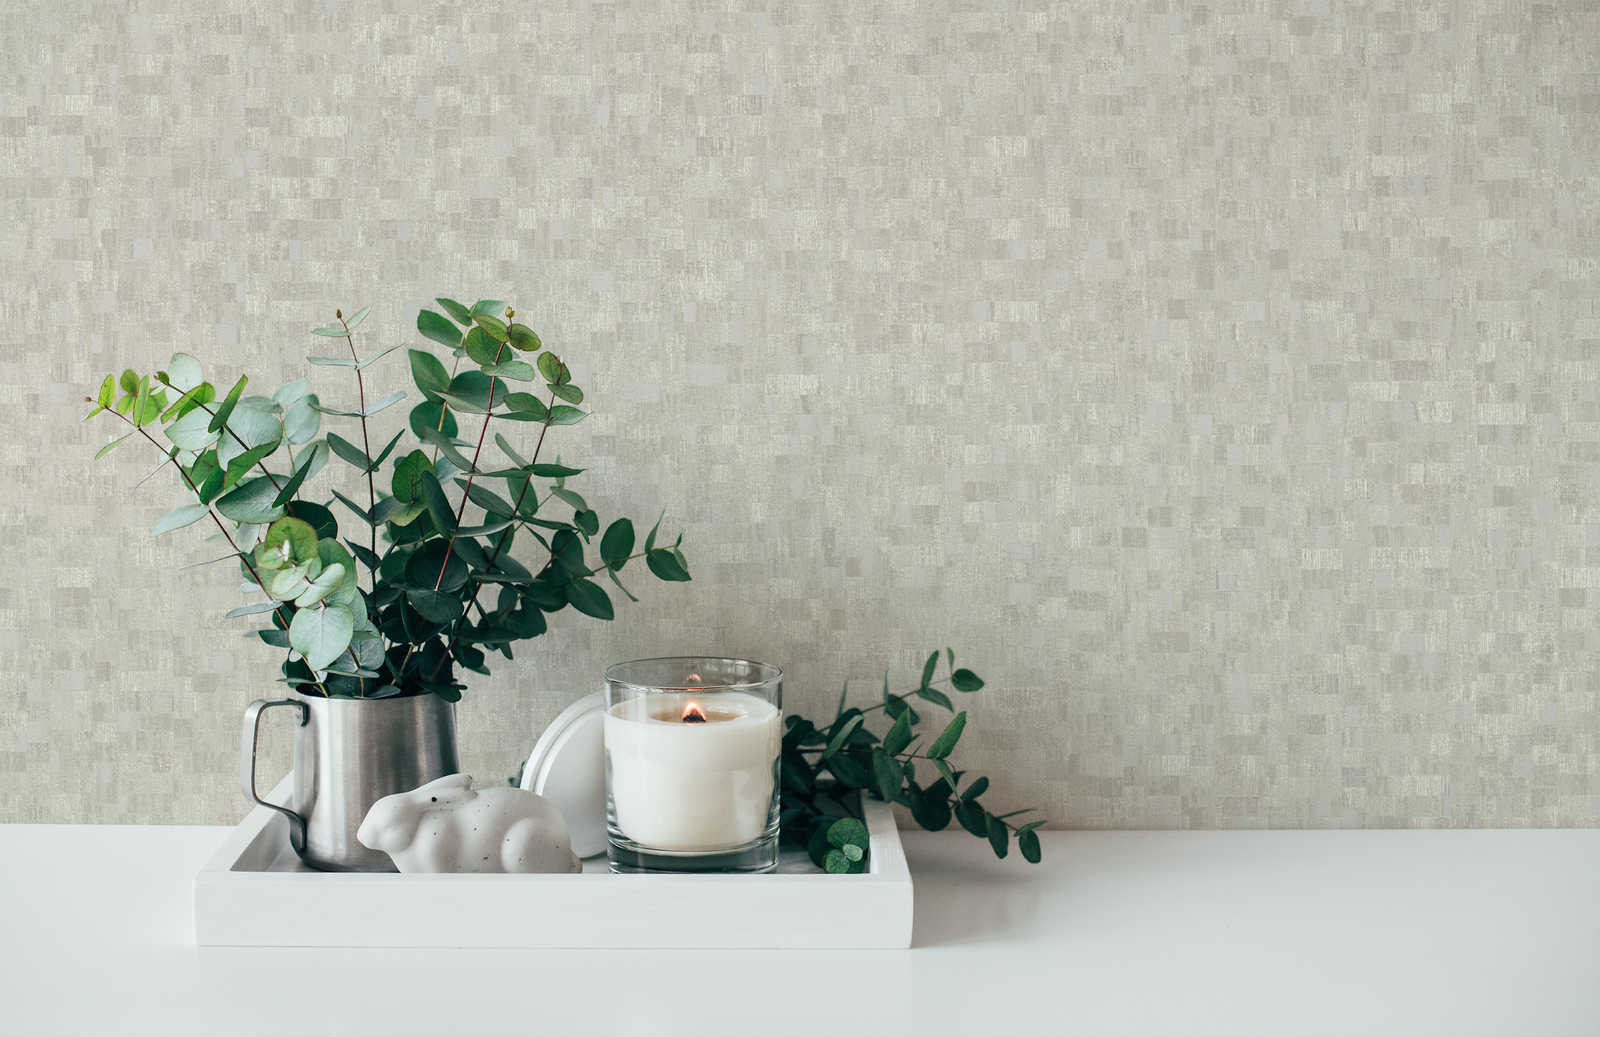             Textured wallpaper ethnic pattern in mosaic style - cream, beige
        